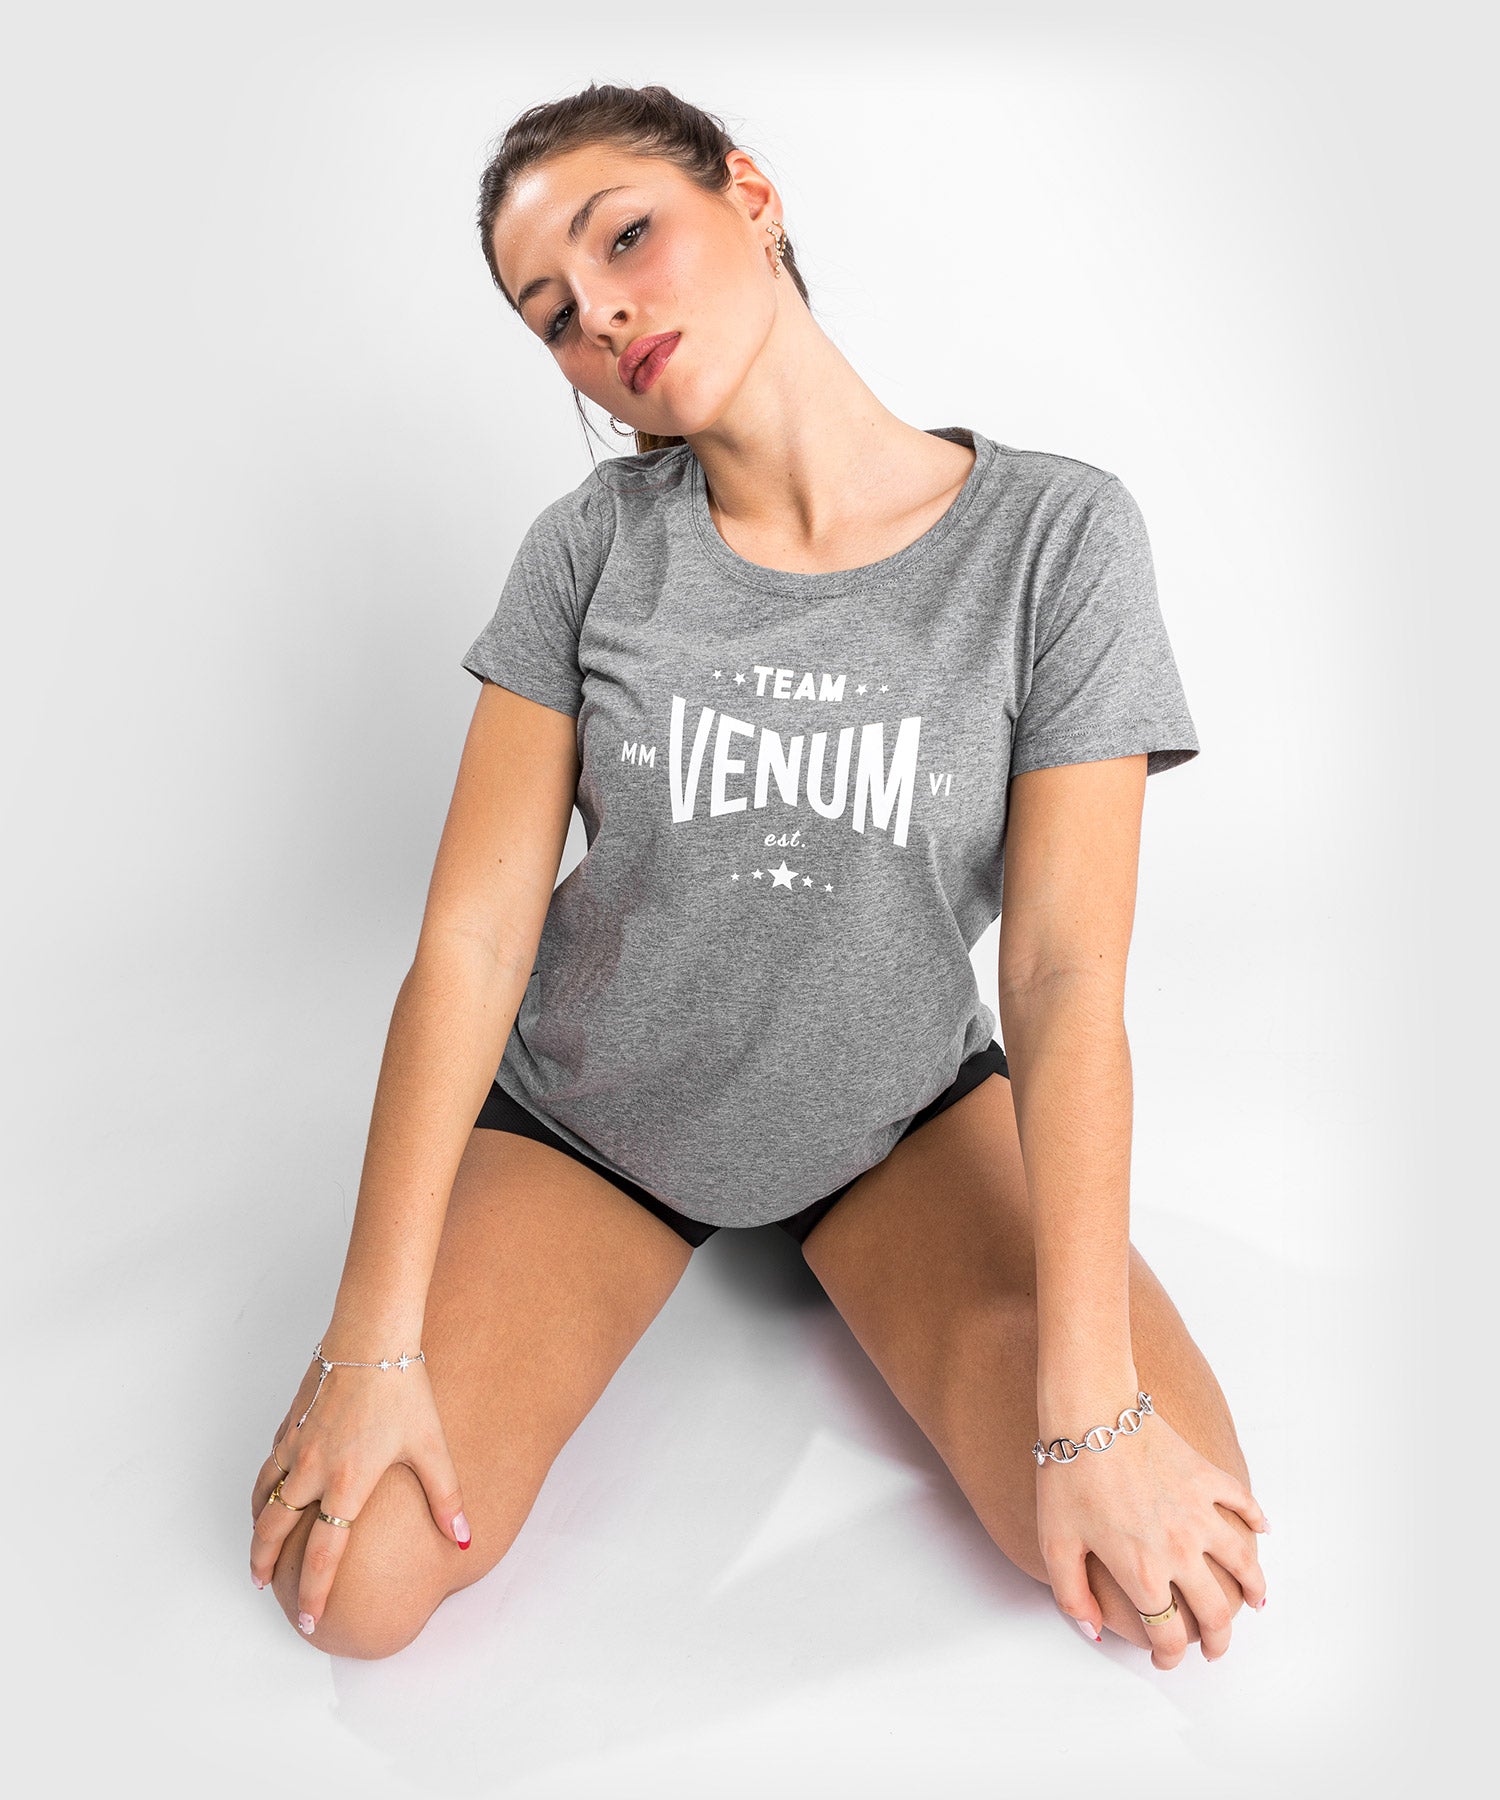 T-Shirt Venum Team 2.0 - Pour Femmes - Gris Chiné Clair